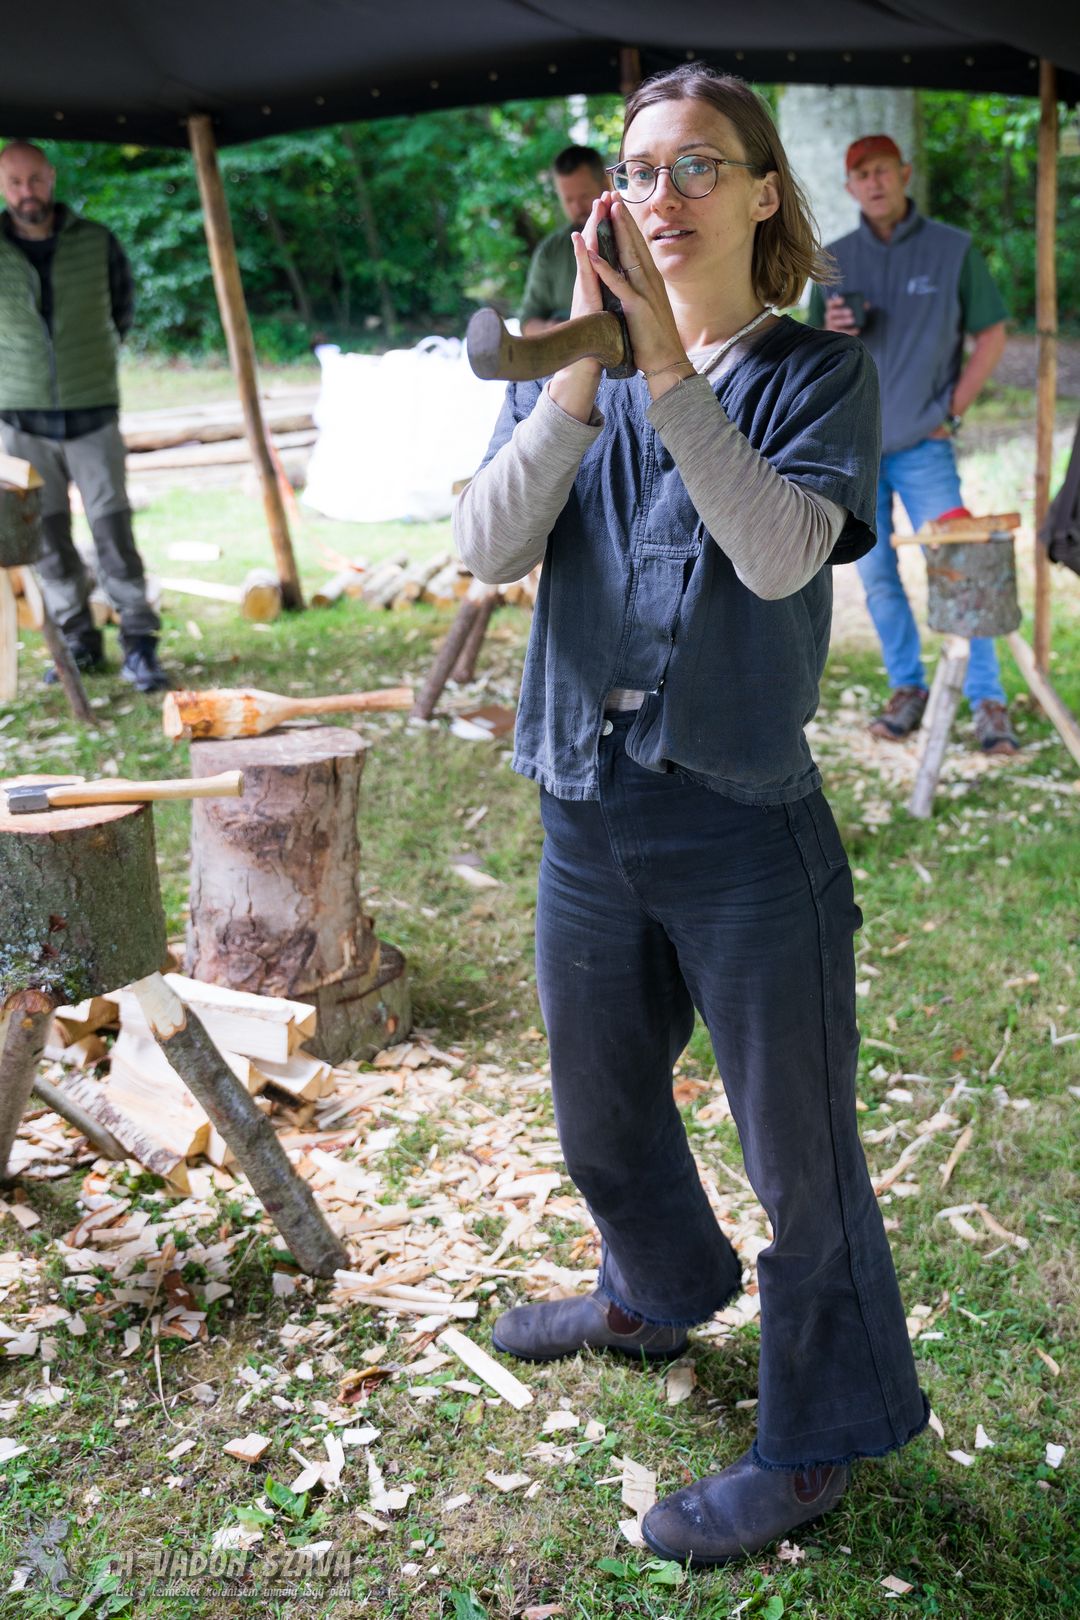 Julia Kalthoff svéd kovácsmester saját kovácsolású faragóbaltáit adta a kezünkbe az általa vezetett fafaragó gyakorlaton. Amely nem mellesleg tényleg kiváló szerszám.